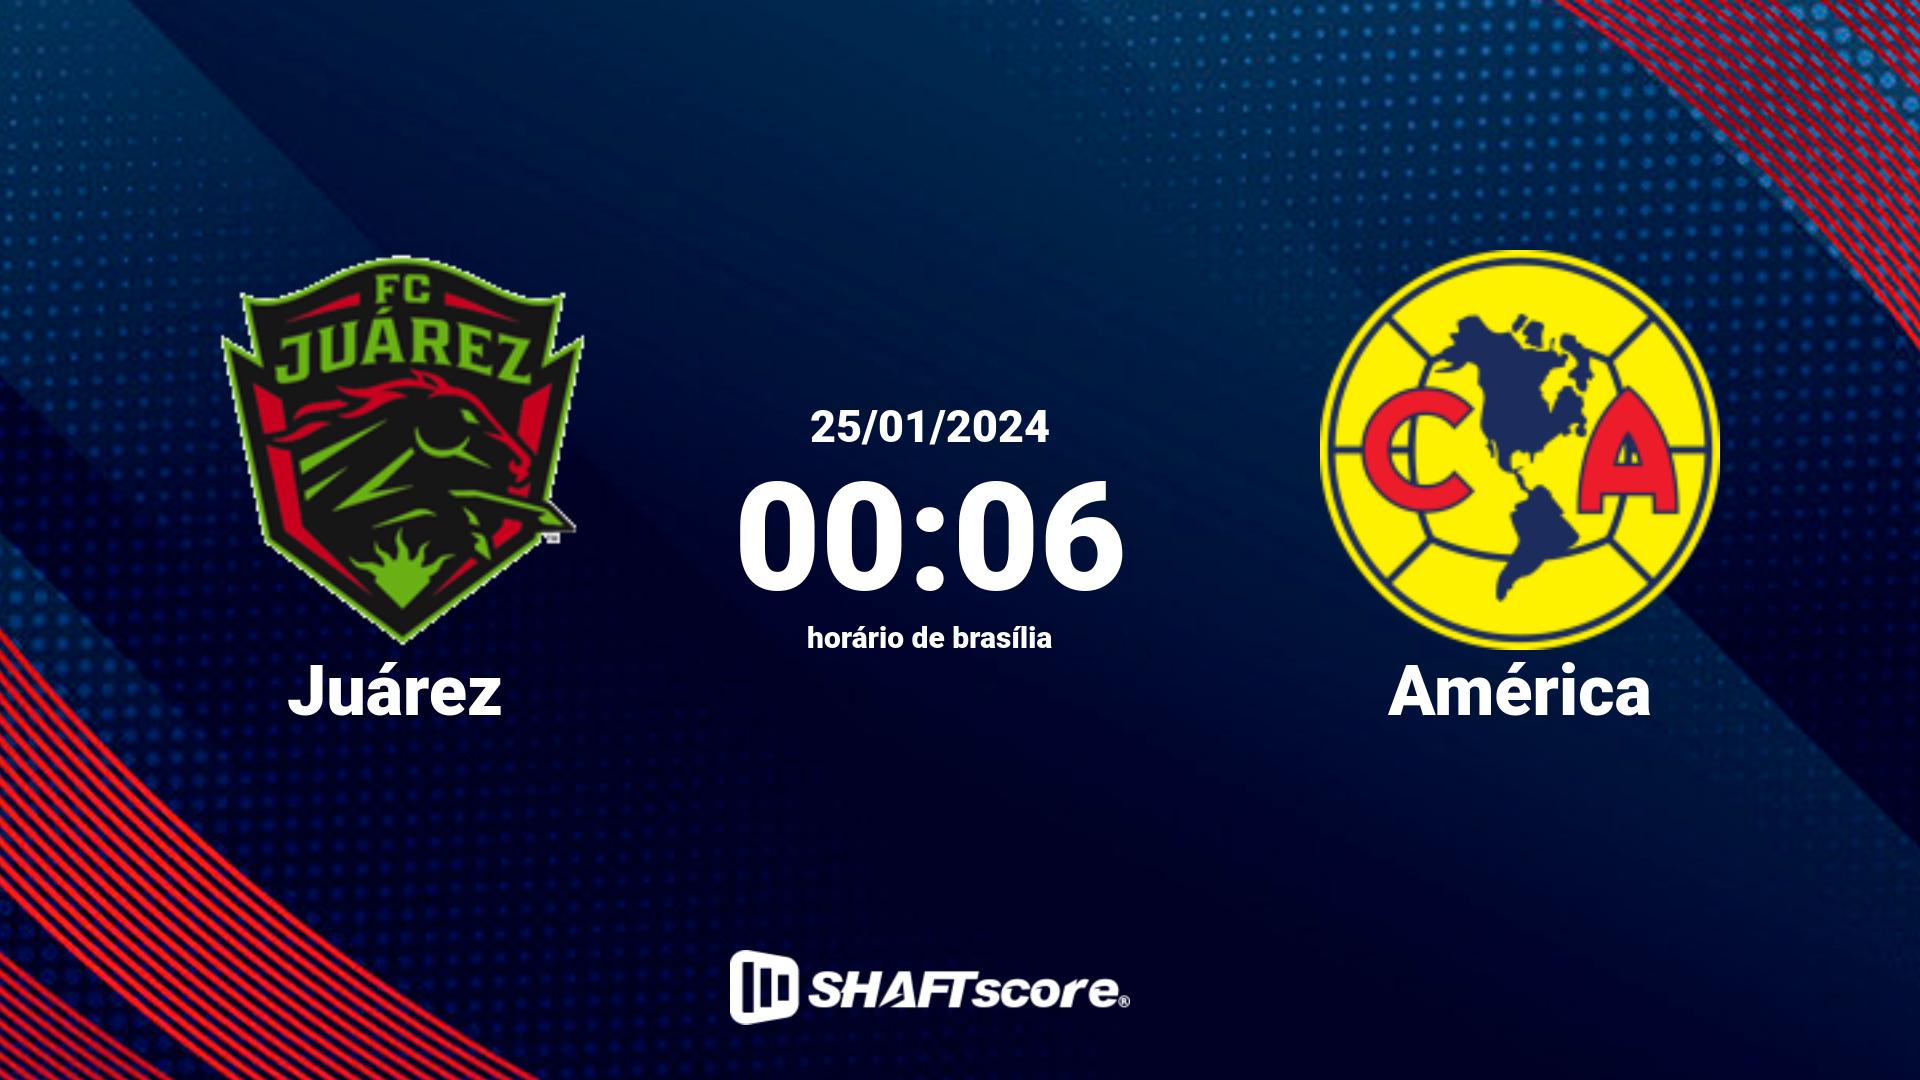 Estatísticas do jogo Juárez vs América 25.01 00:06